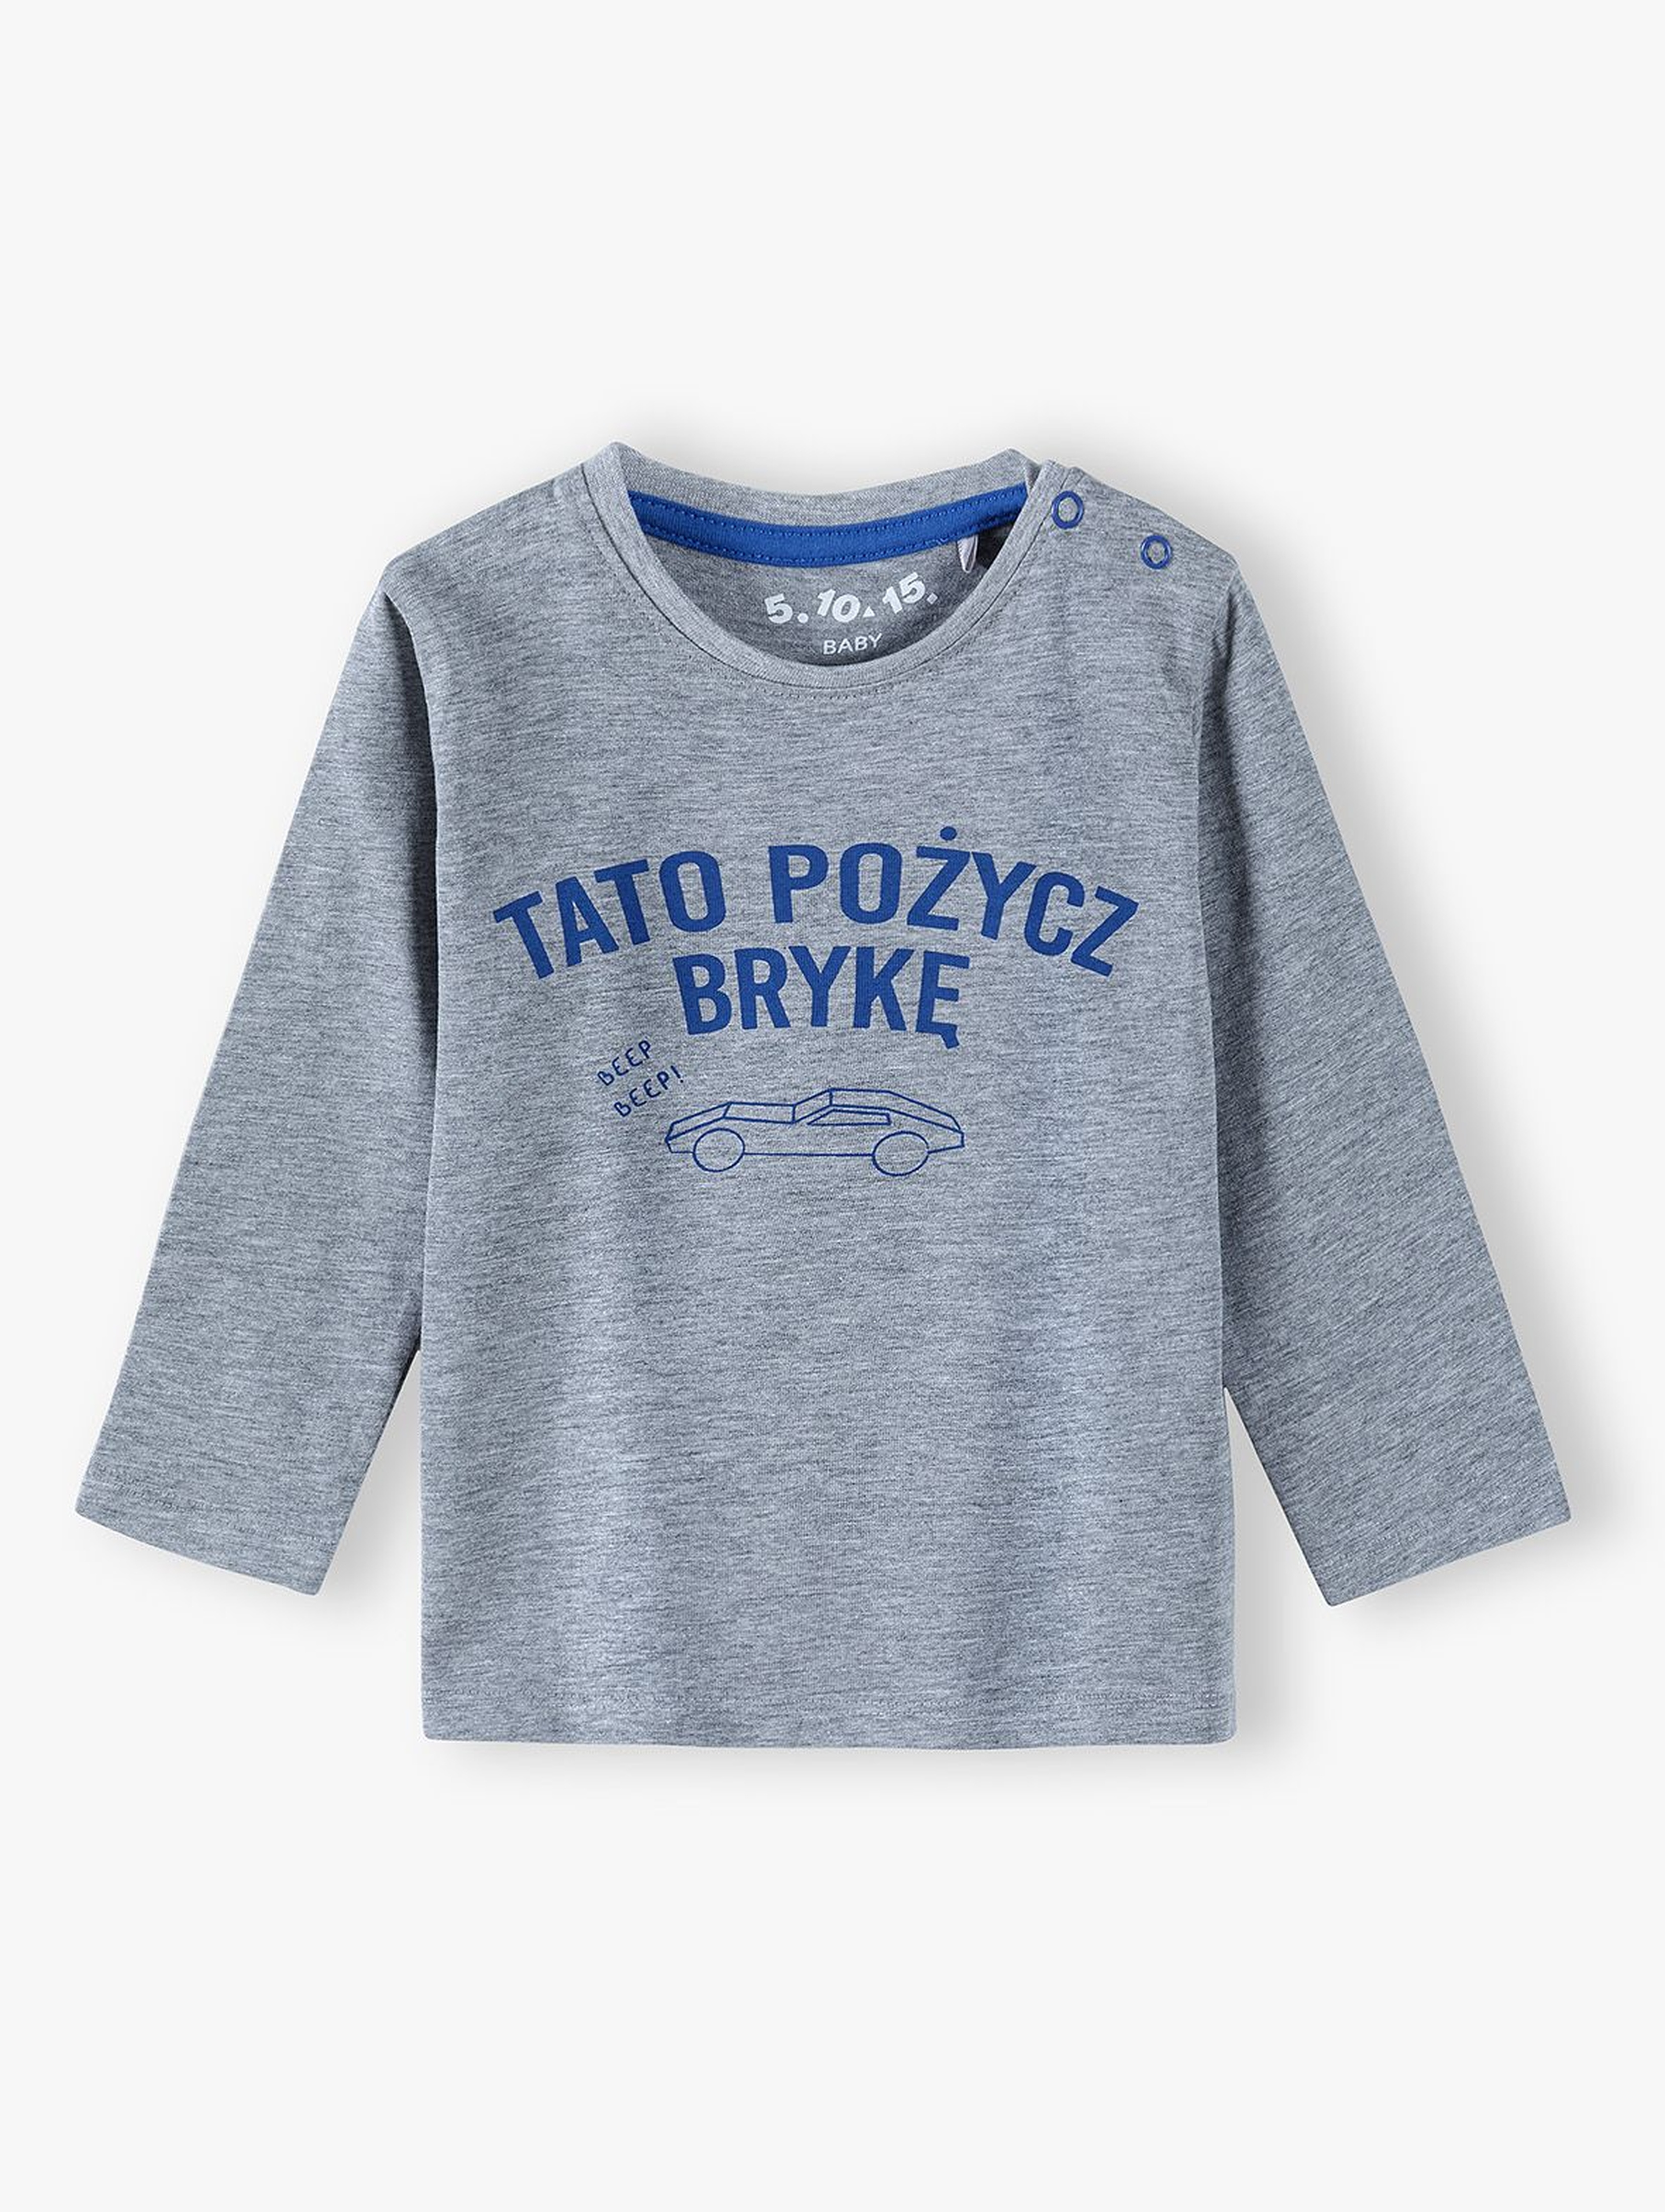 Bluzka niemowlęca z polskim napisem - TATO POŻYCZ BRYKĘ